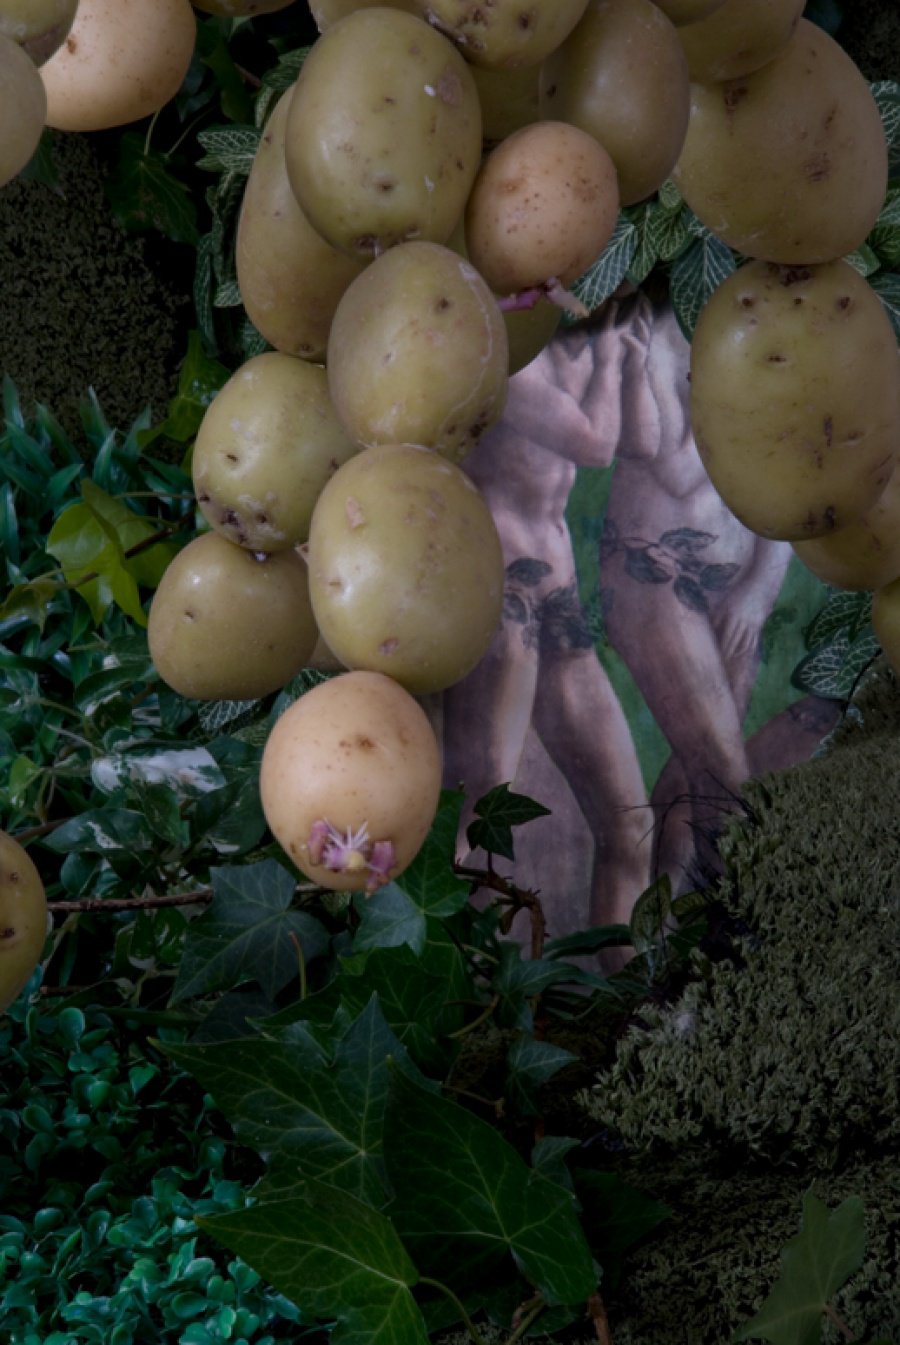 The Potato Days (Masaccio)